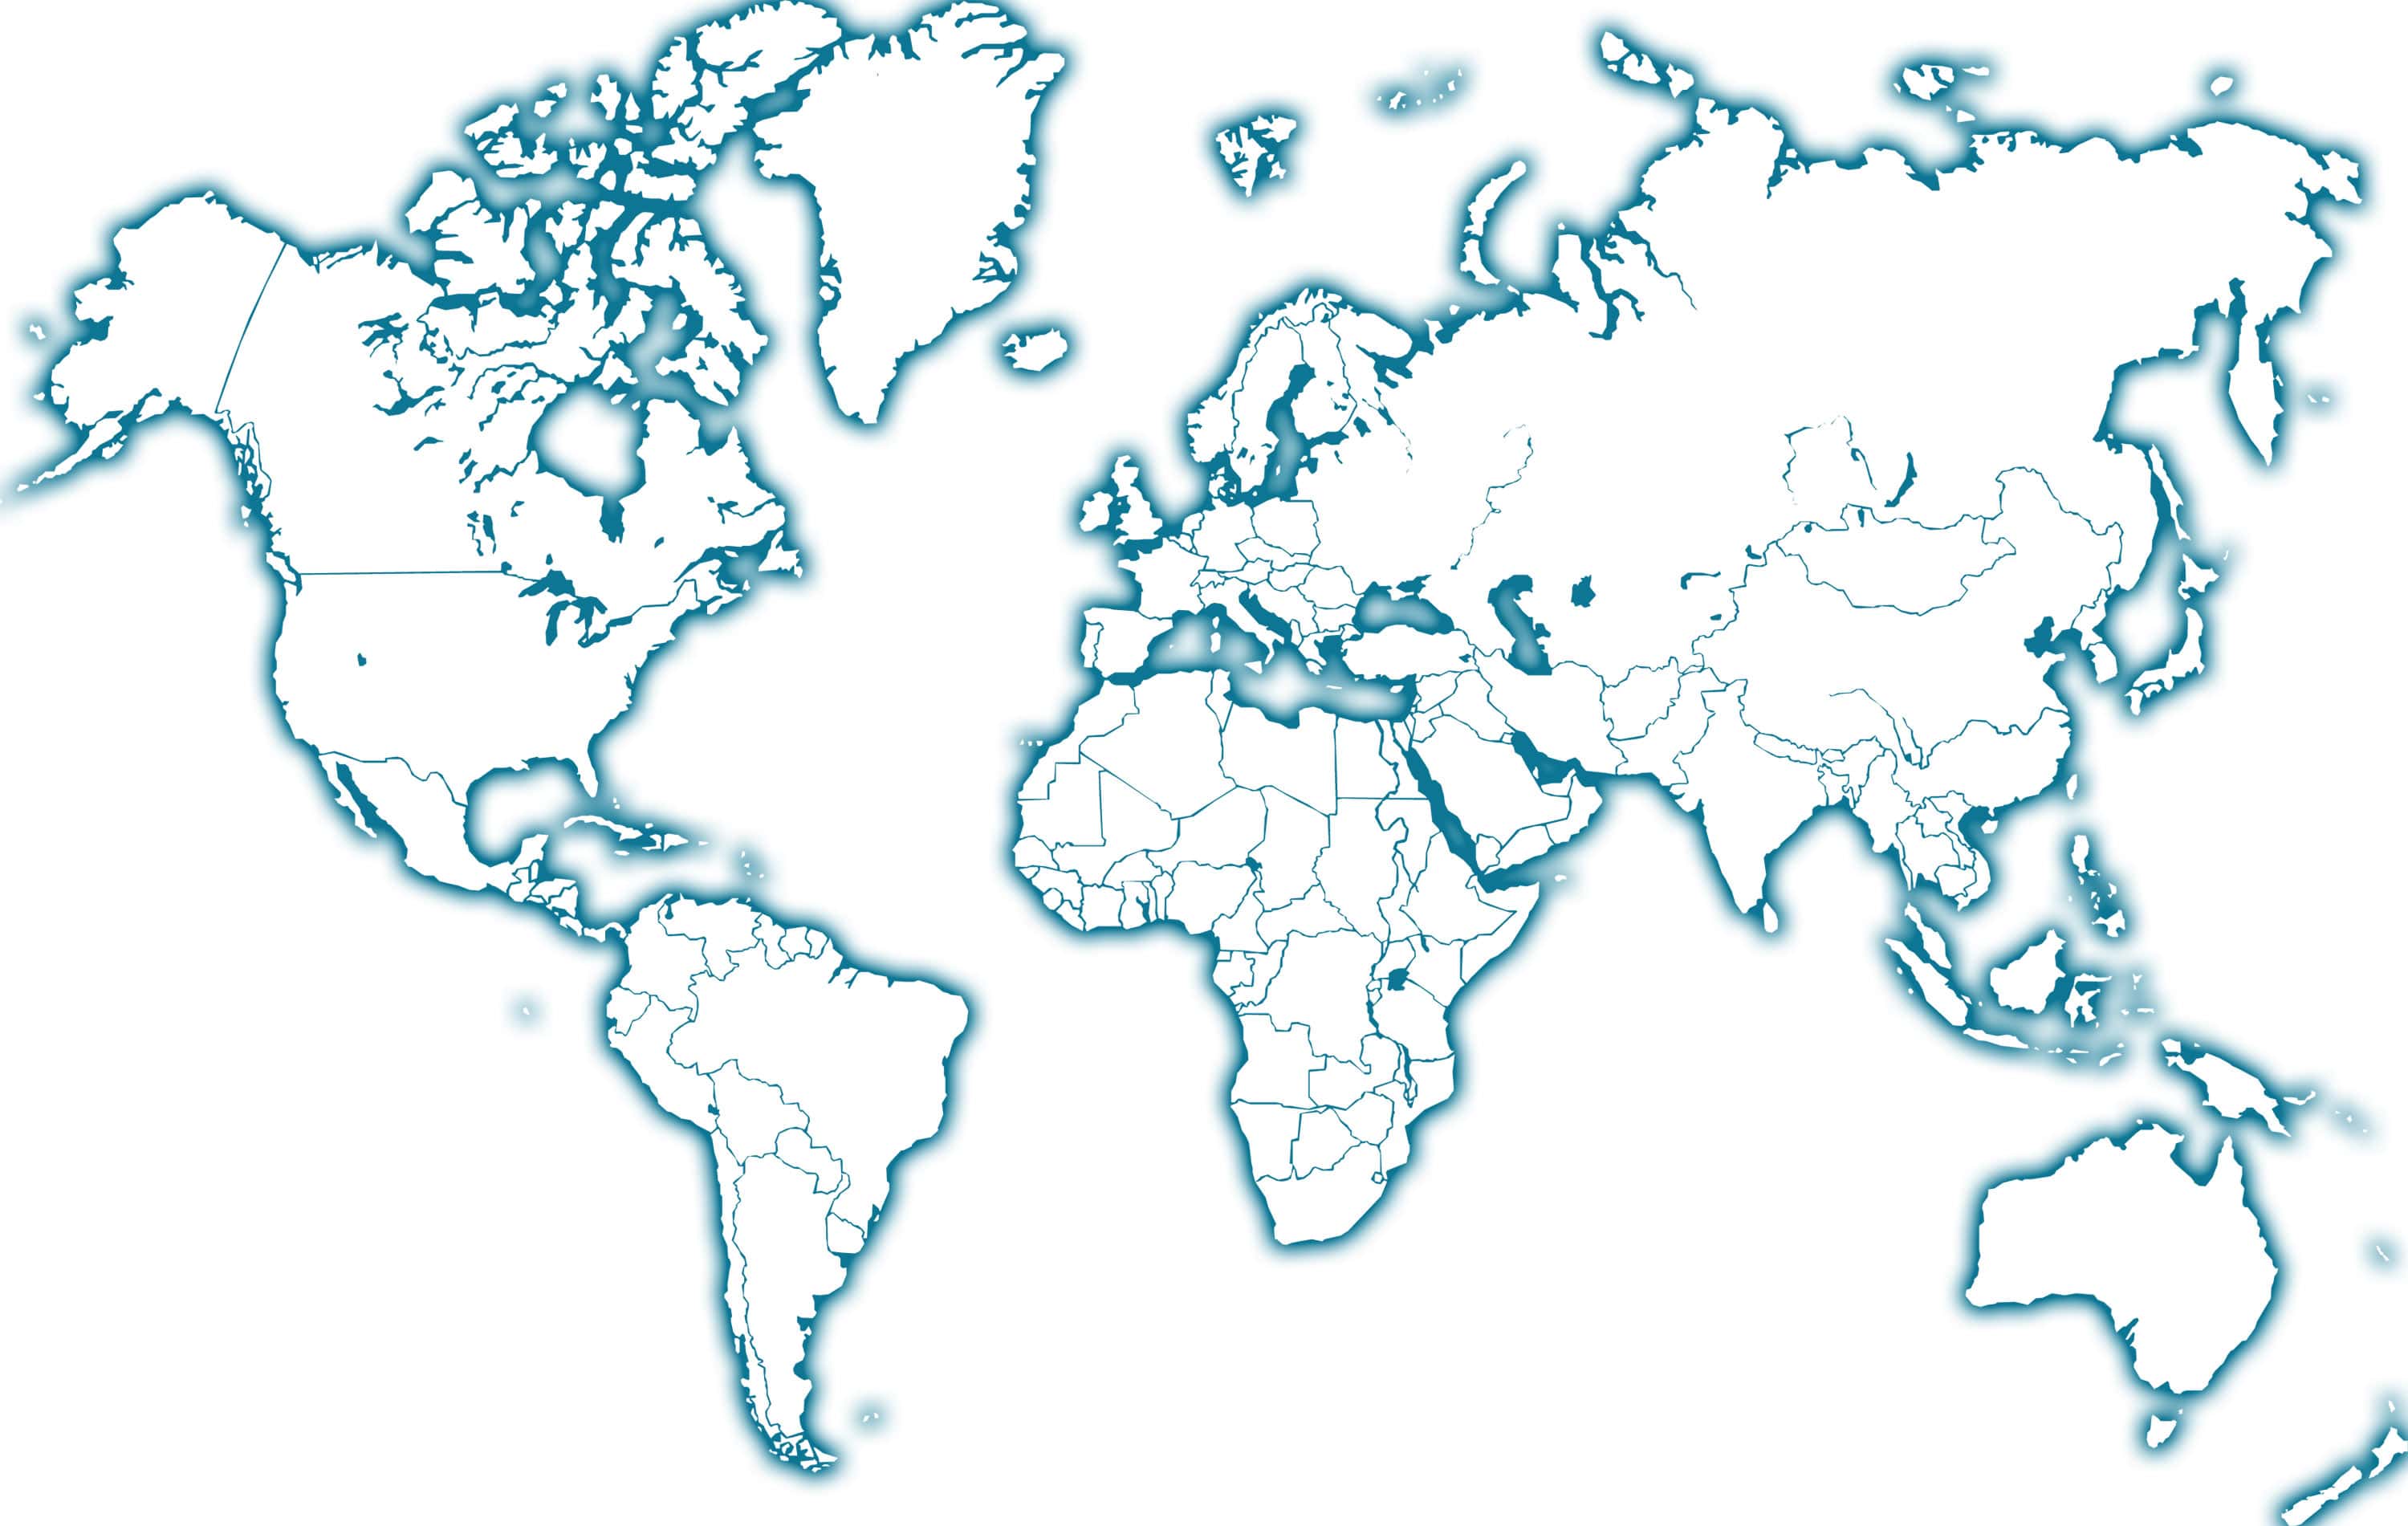 Cartograf.fr : Toutes les cartes des pays du monde